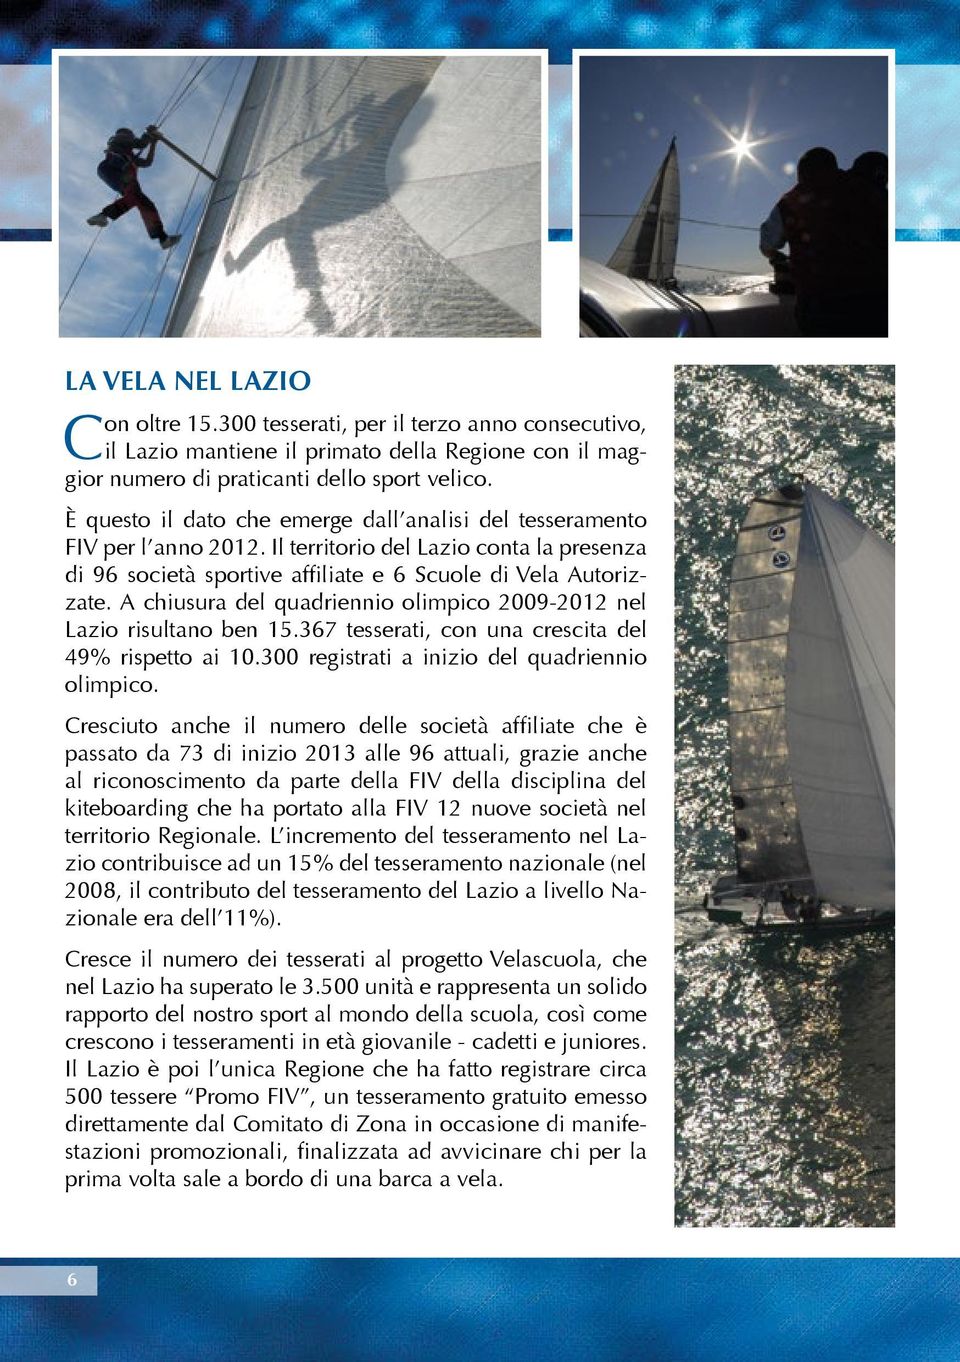 A chiusura del quadriennio olimpico 2009-2012 nel Lazio risultano ben 15.367 tesserati, con una crescita del 49% rispetto ai 10.300 registrati a inizio del quadriennio olimpico.